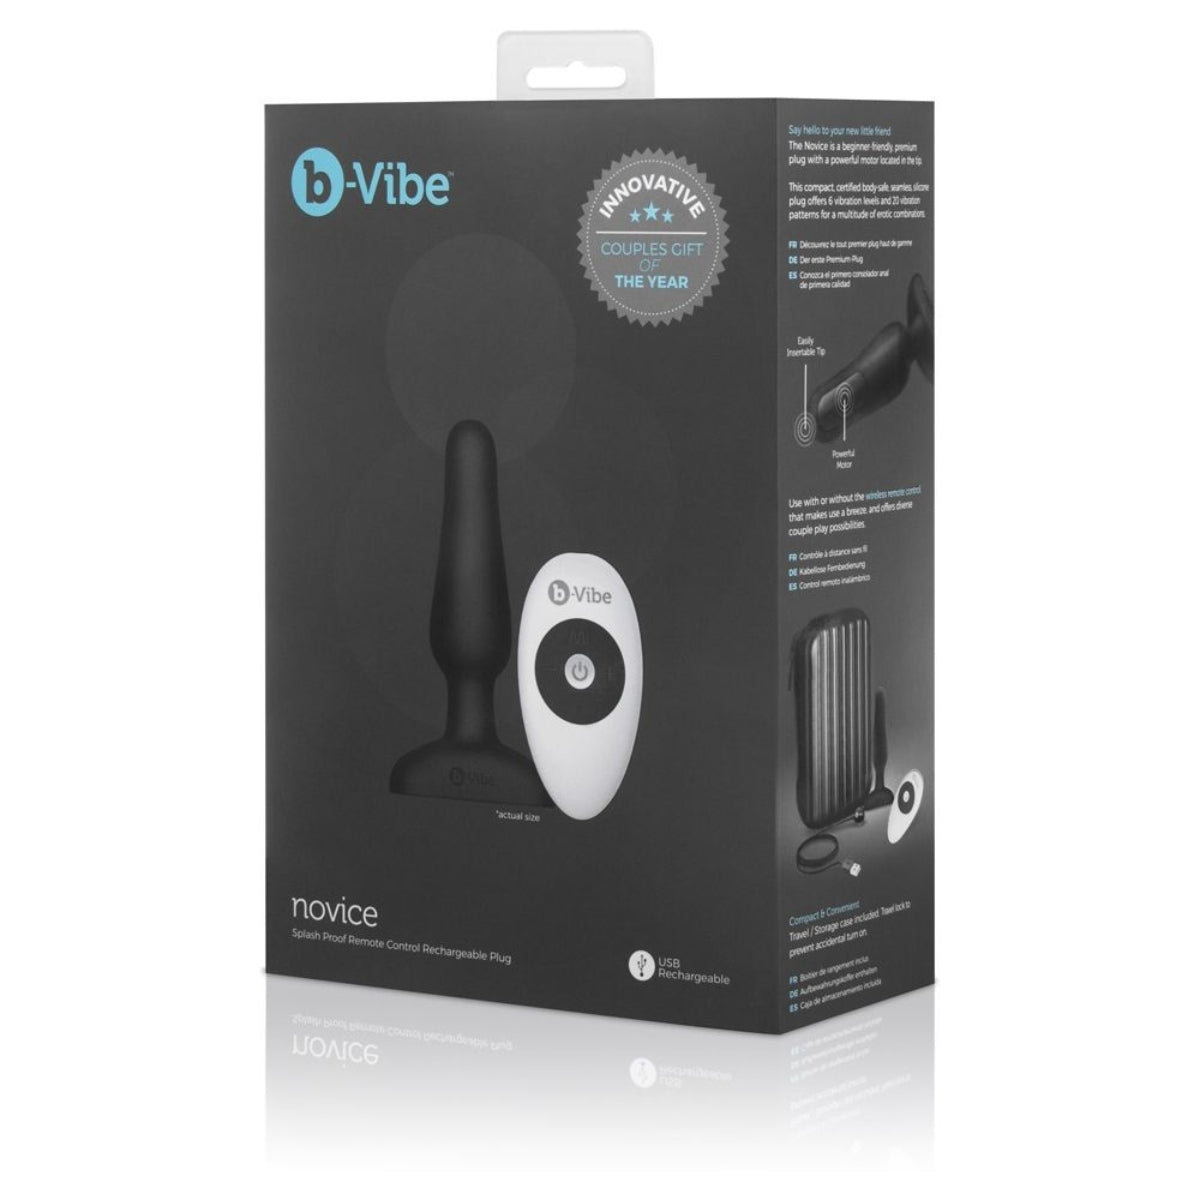 b-Vibe Novice Remote Control Vibrating Butt Plug Black